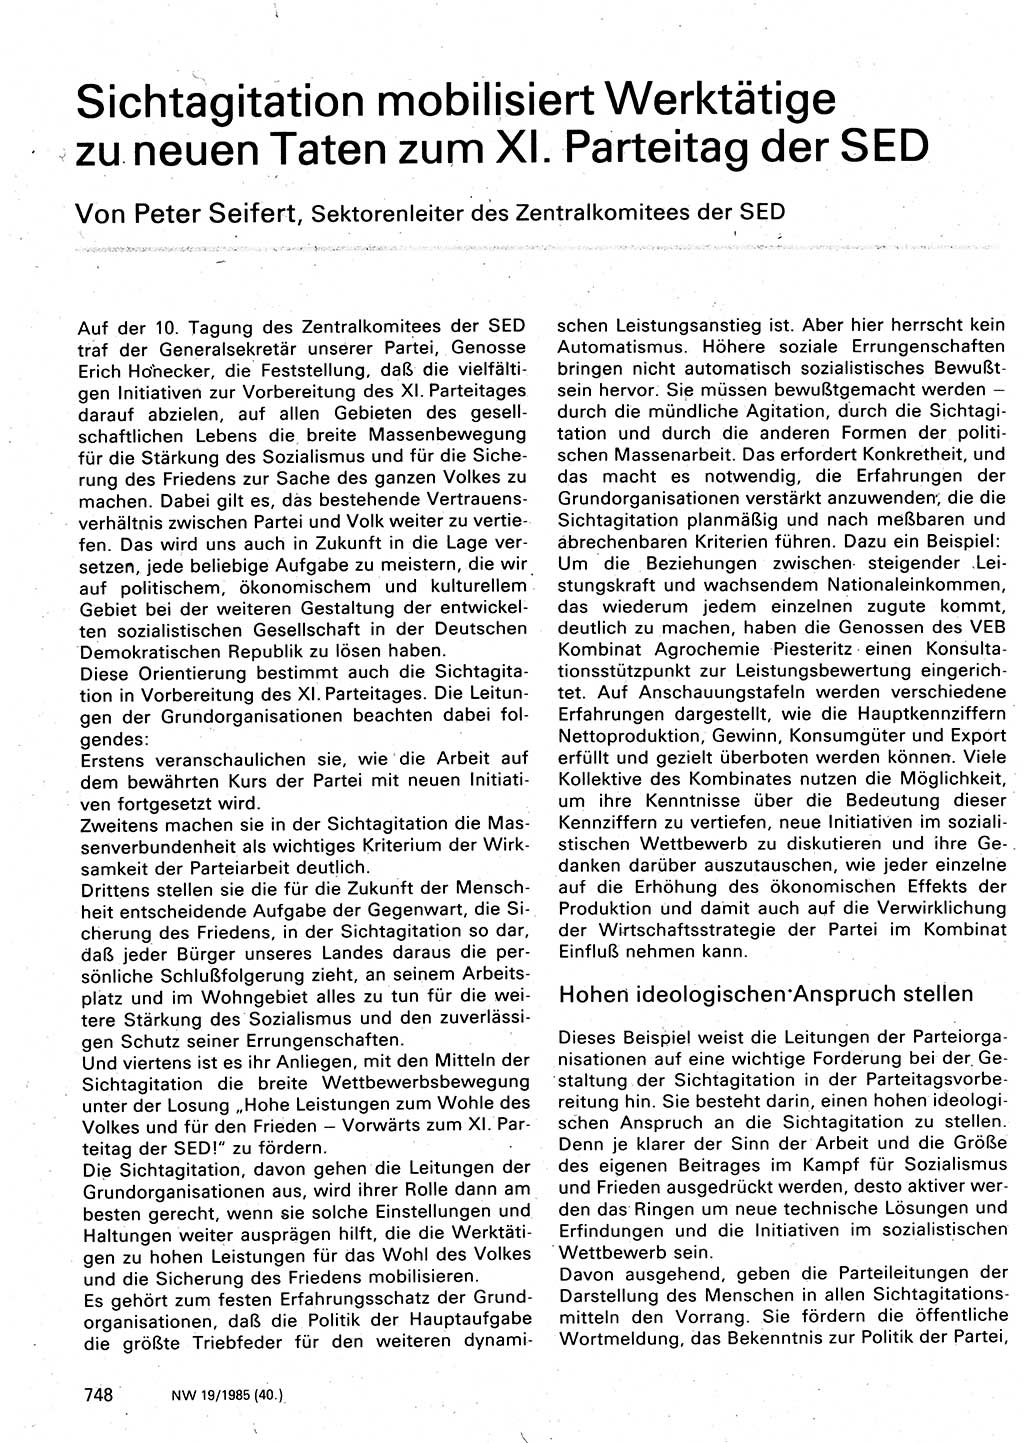 Neuer Weg (NW), Organ des Zentralkomitees (ZK) der SED (Sozialistische Einheitspartei Deutschlands) für Fragen des Parteilebens, 40. Jahrgang [Deutsche Demokratische Republik (DDR)] 1985, Seite 748 (NW ZK SED DDR 1985, S. 748)